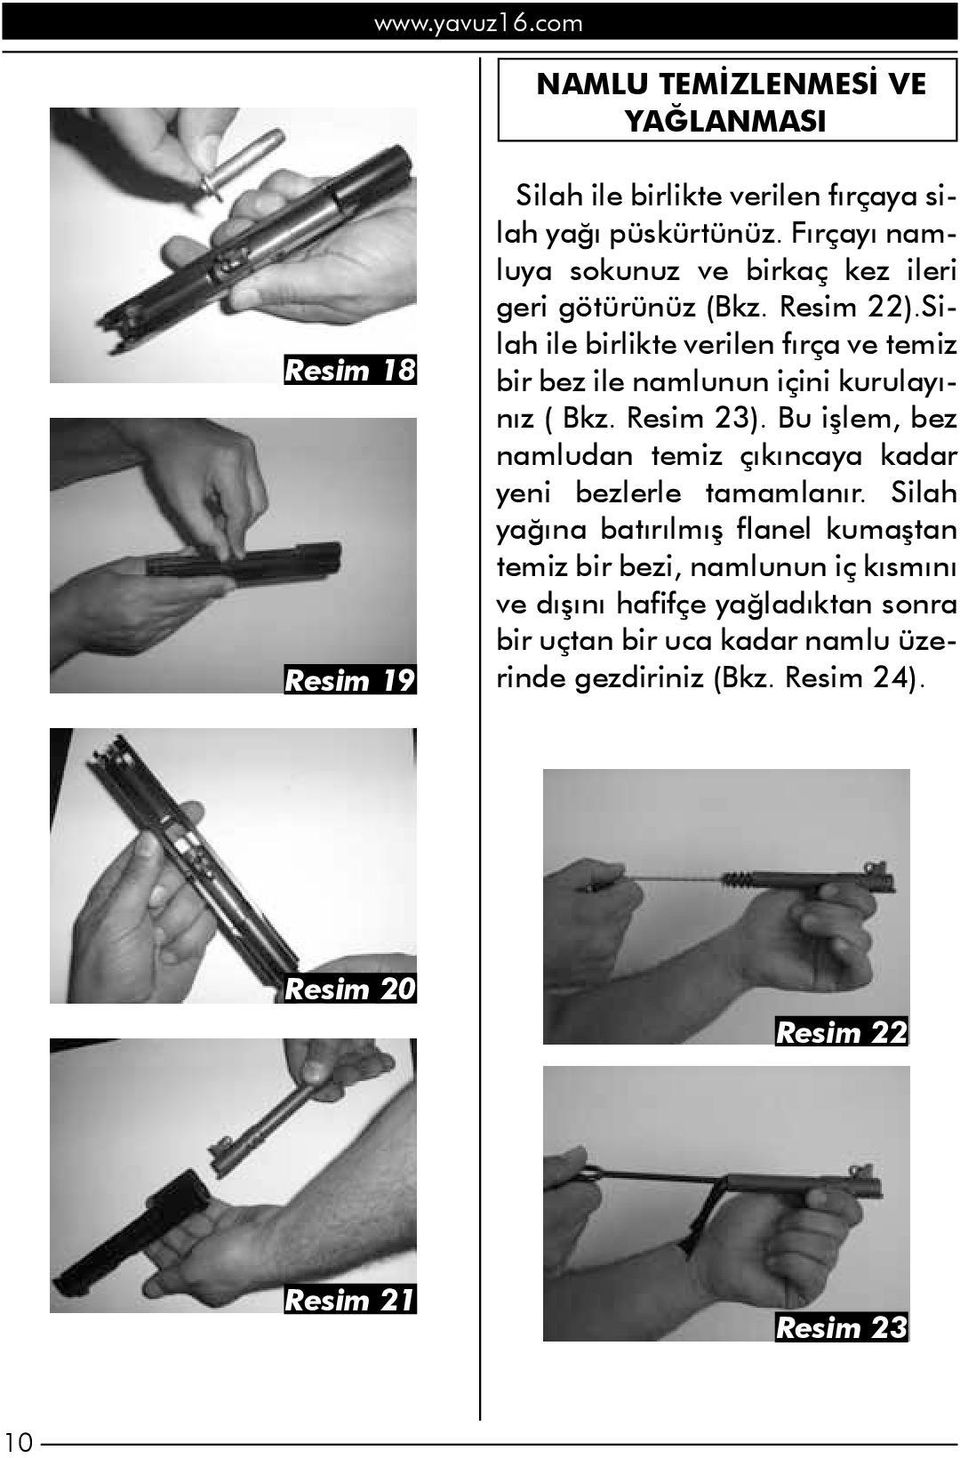 Silah ile birlikte verilen fırça ve temiz bir bez ile namlunun içini kurulayınız ( Bkz. Resim 23).